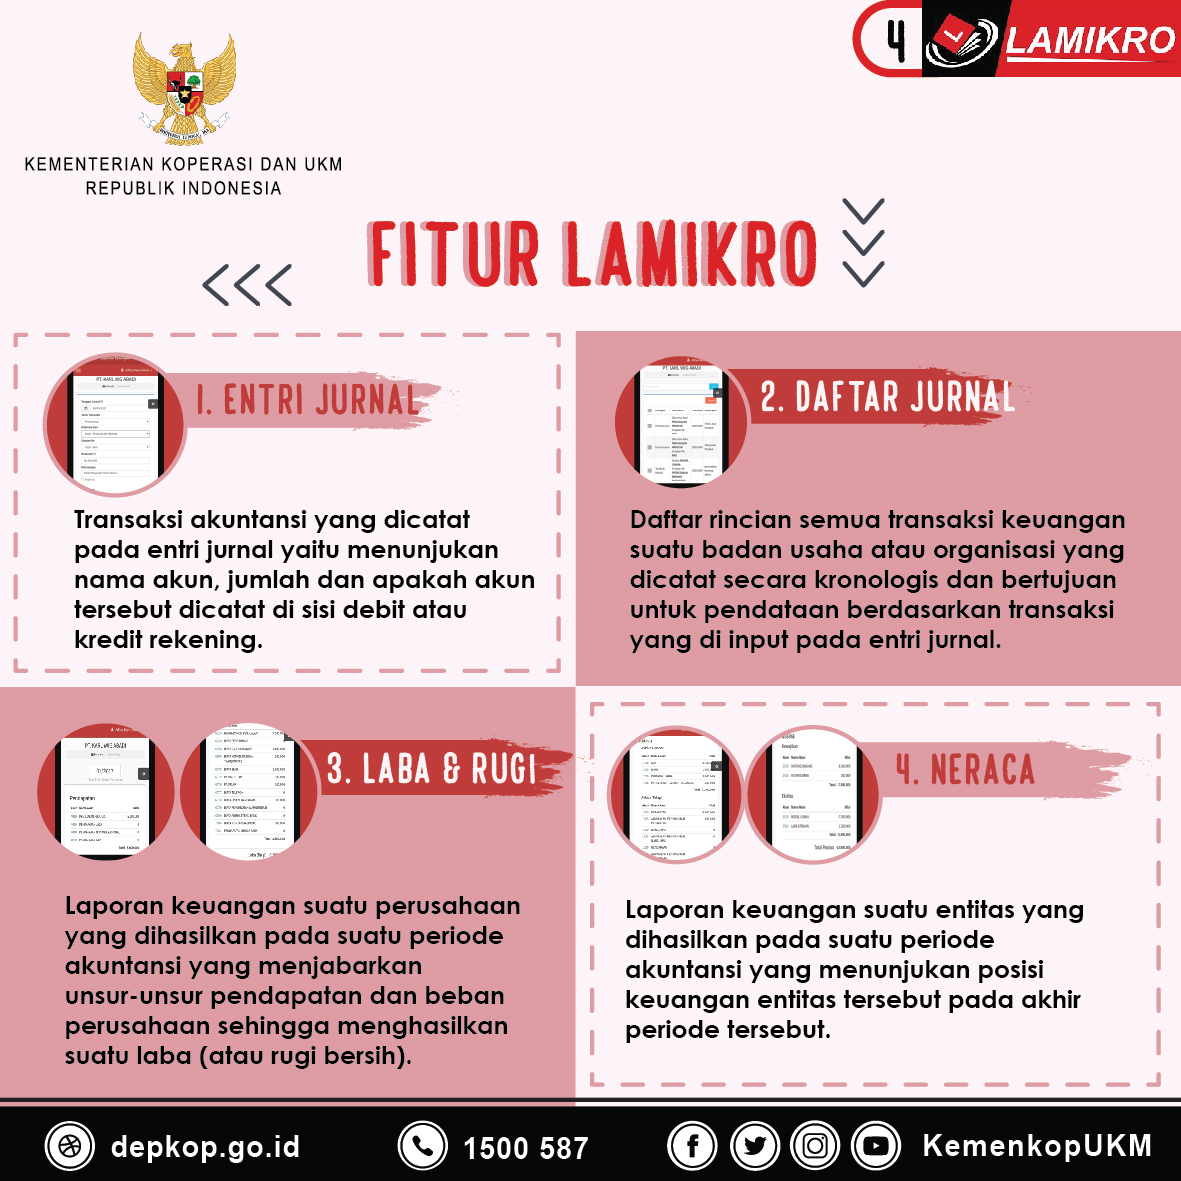 Fitur Lamikro - 20180509